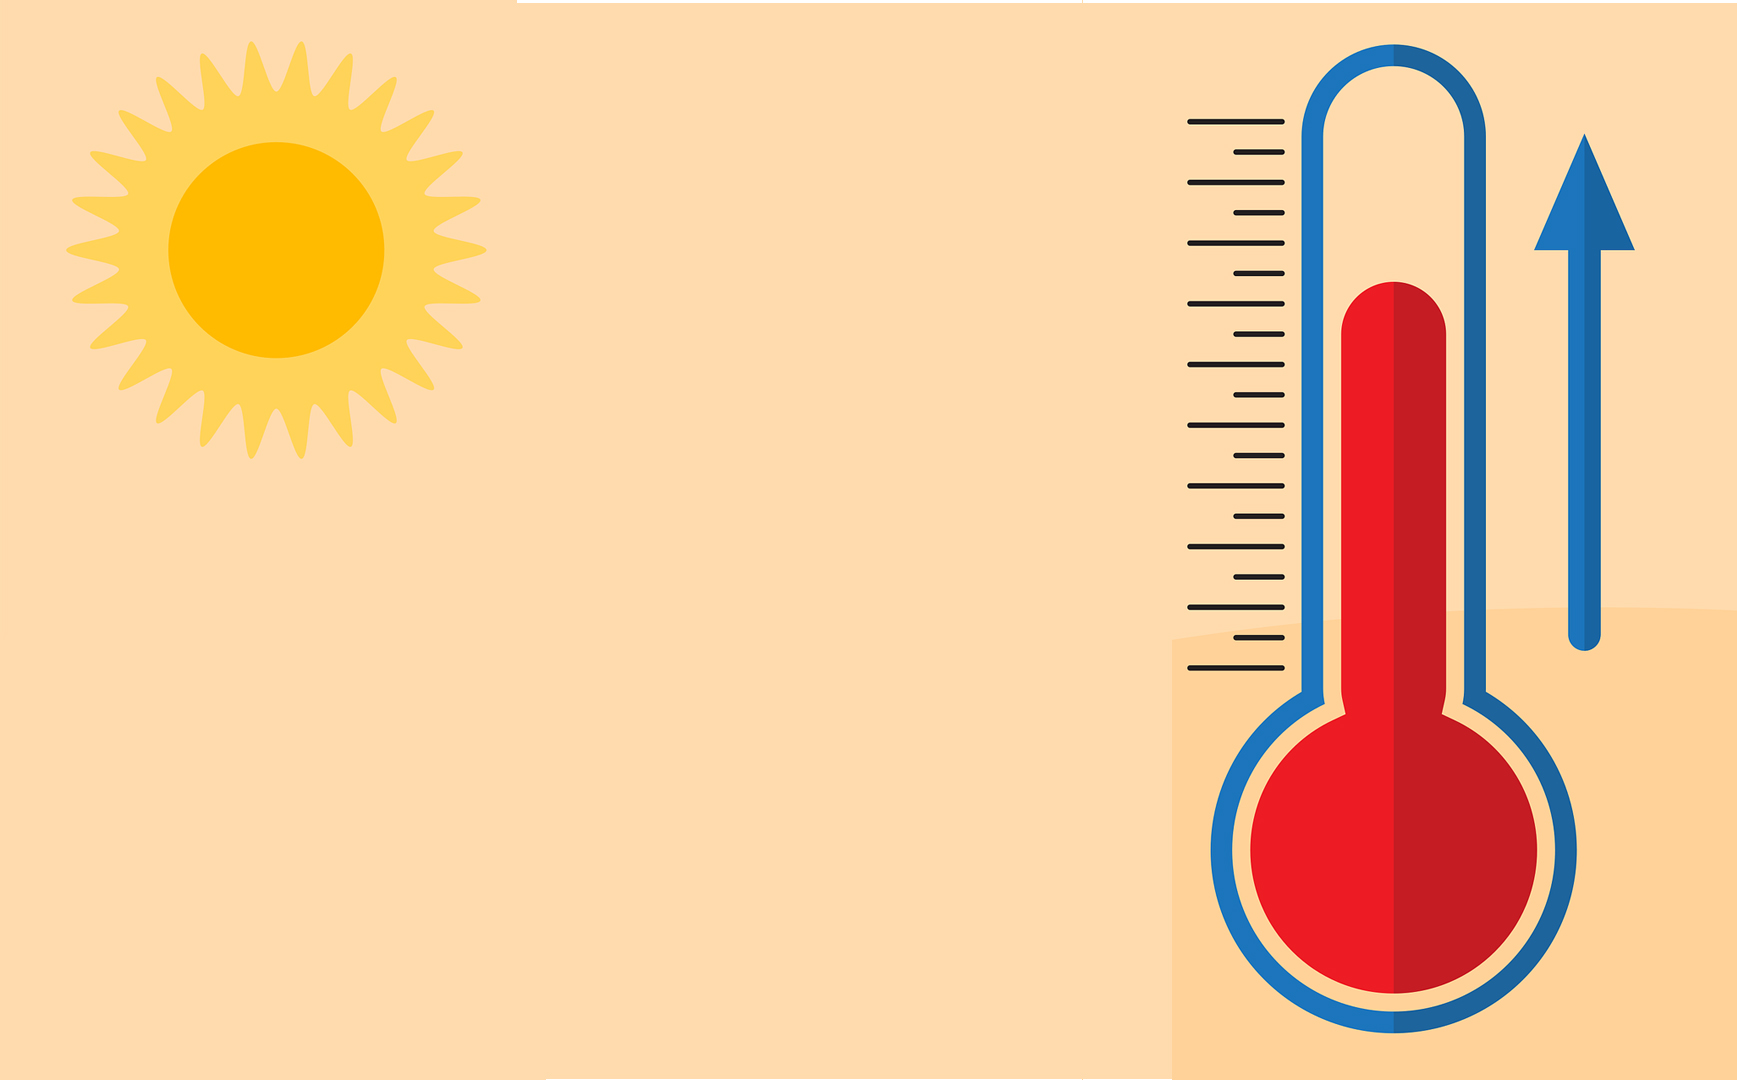 extreme heat - rising temperature - summer